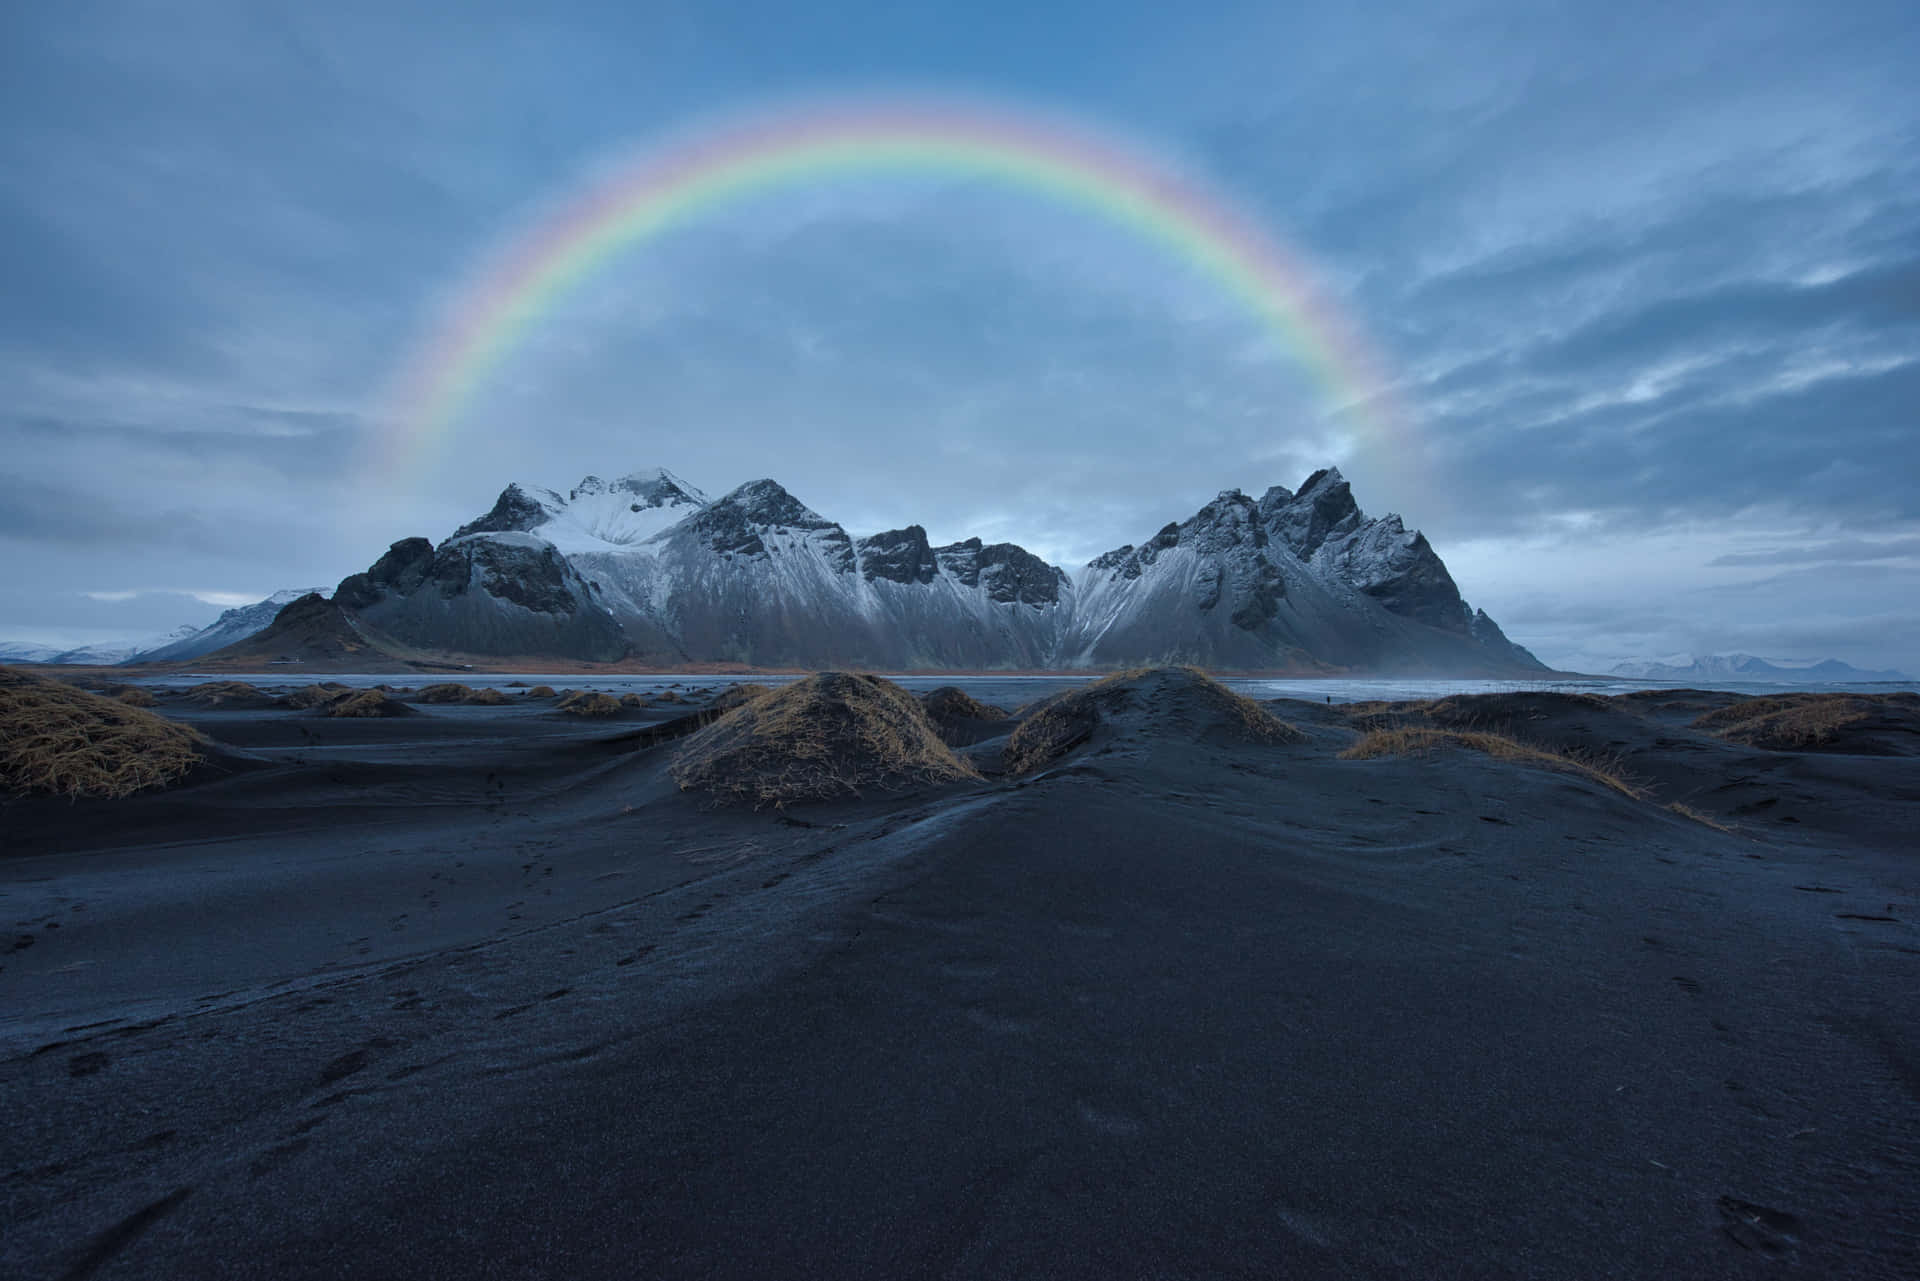 Auroraboreal Magnífica Sobre A Caverna De Gelo Na Islândia